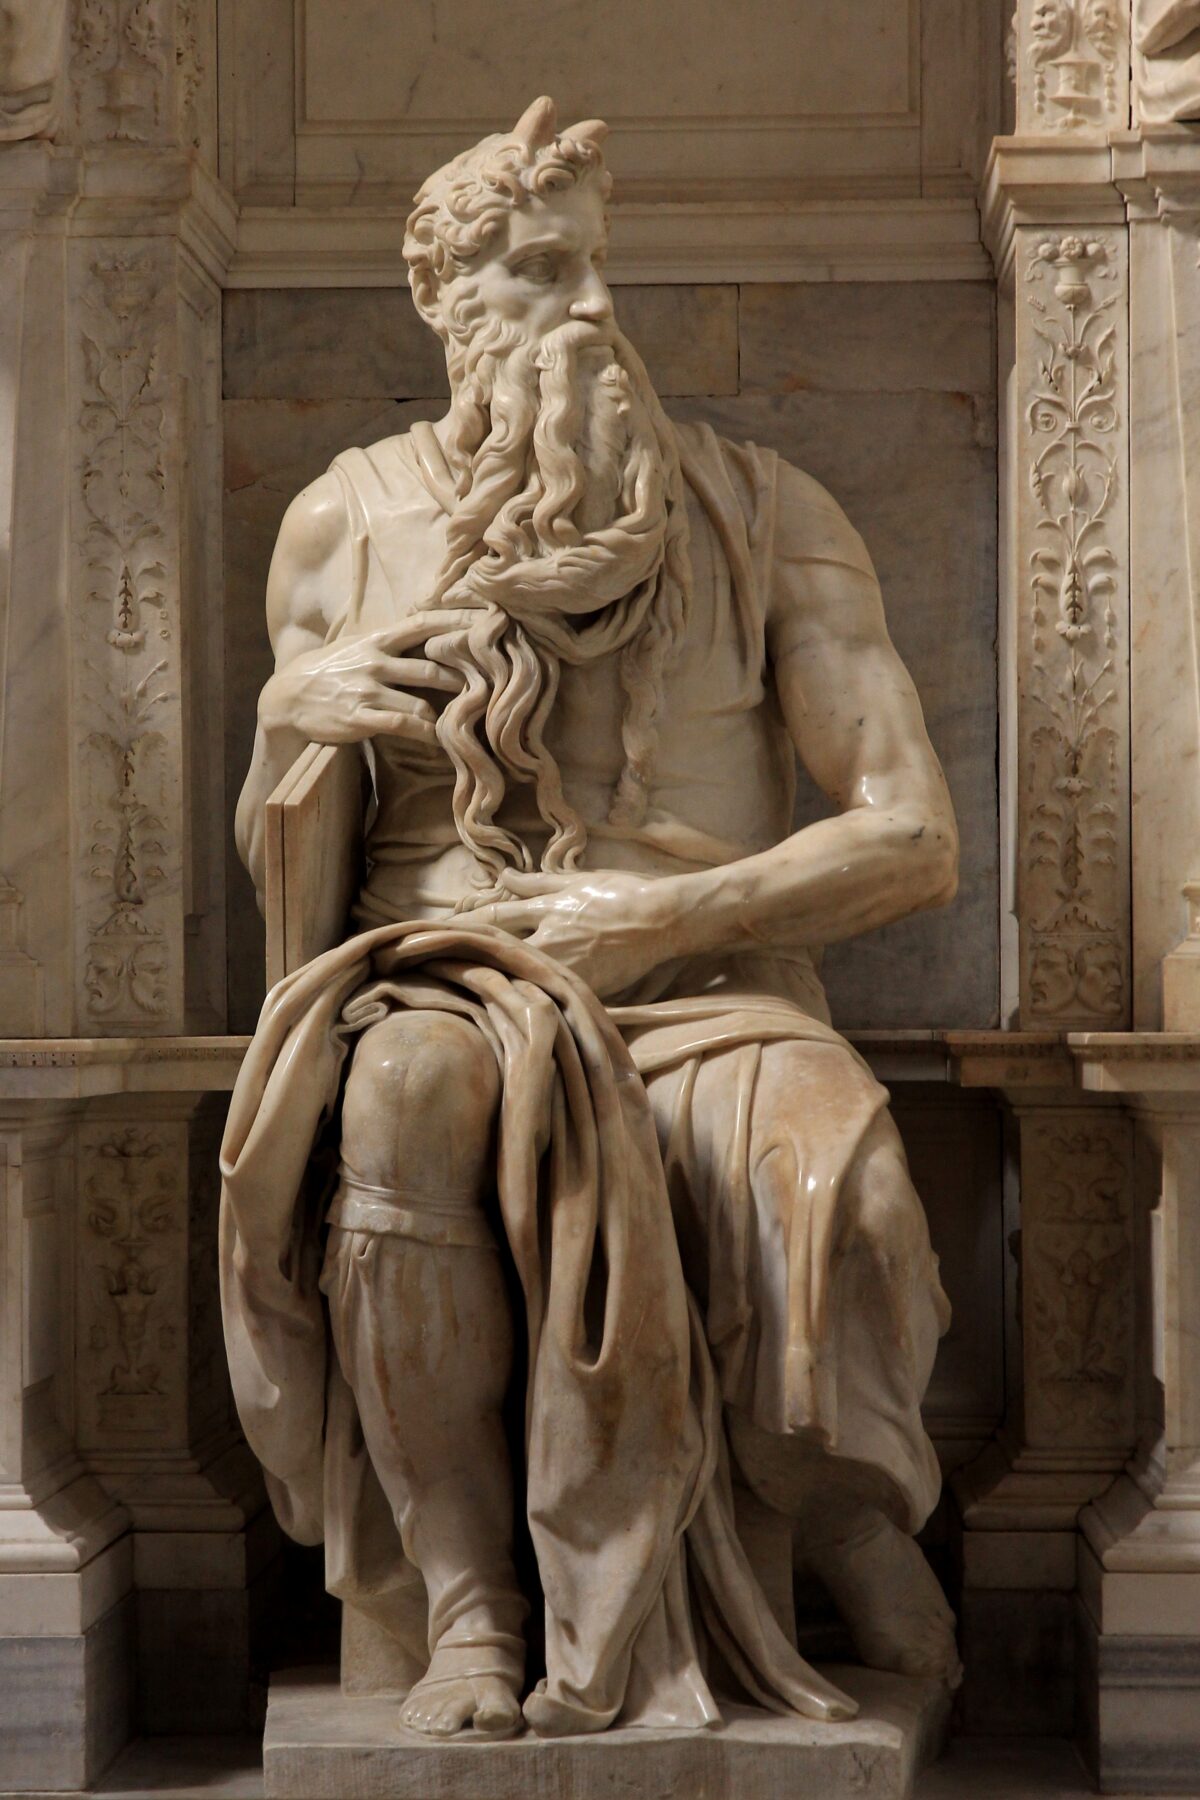 Tượng “Moses” của nghệ thuật gia Michelangelo trong nhà thờ San Pietro ở Vincoli, Rome. (Những chiếc sừng trên đầu Nhà tiên tri Moses được cho là dựa theo theo bản dịch tiếng Latin của Kinh Thánh vào thời điểm tạo ra bức tượng.) (Ảnh: Jörg Bittner Unna/CC BY 3.0)